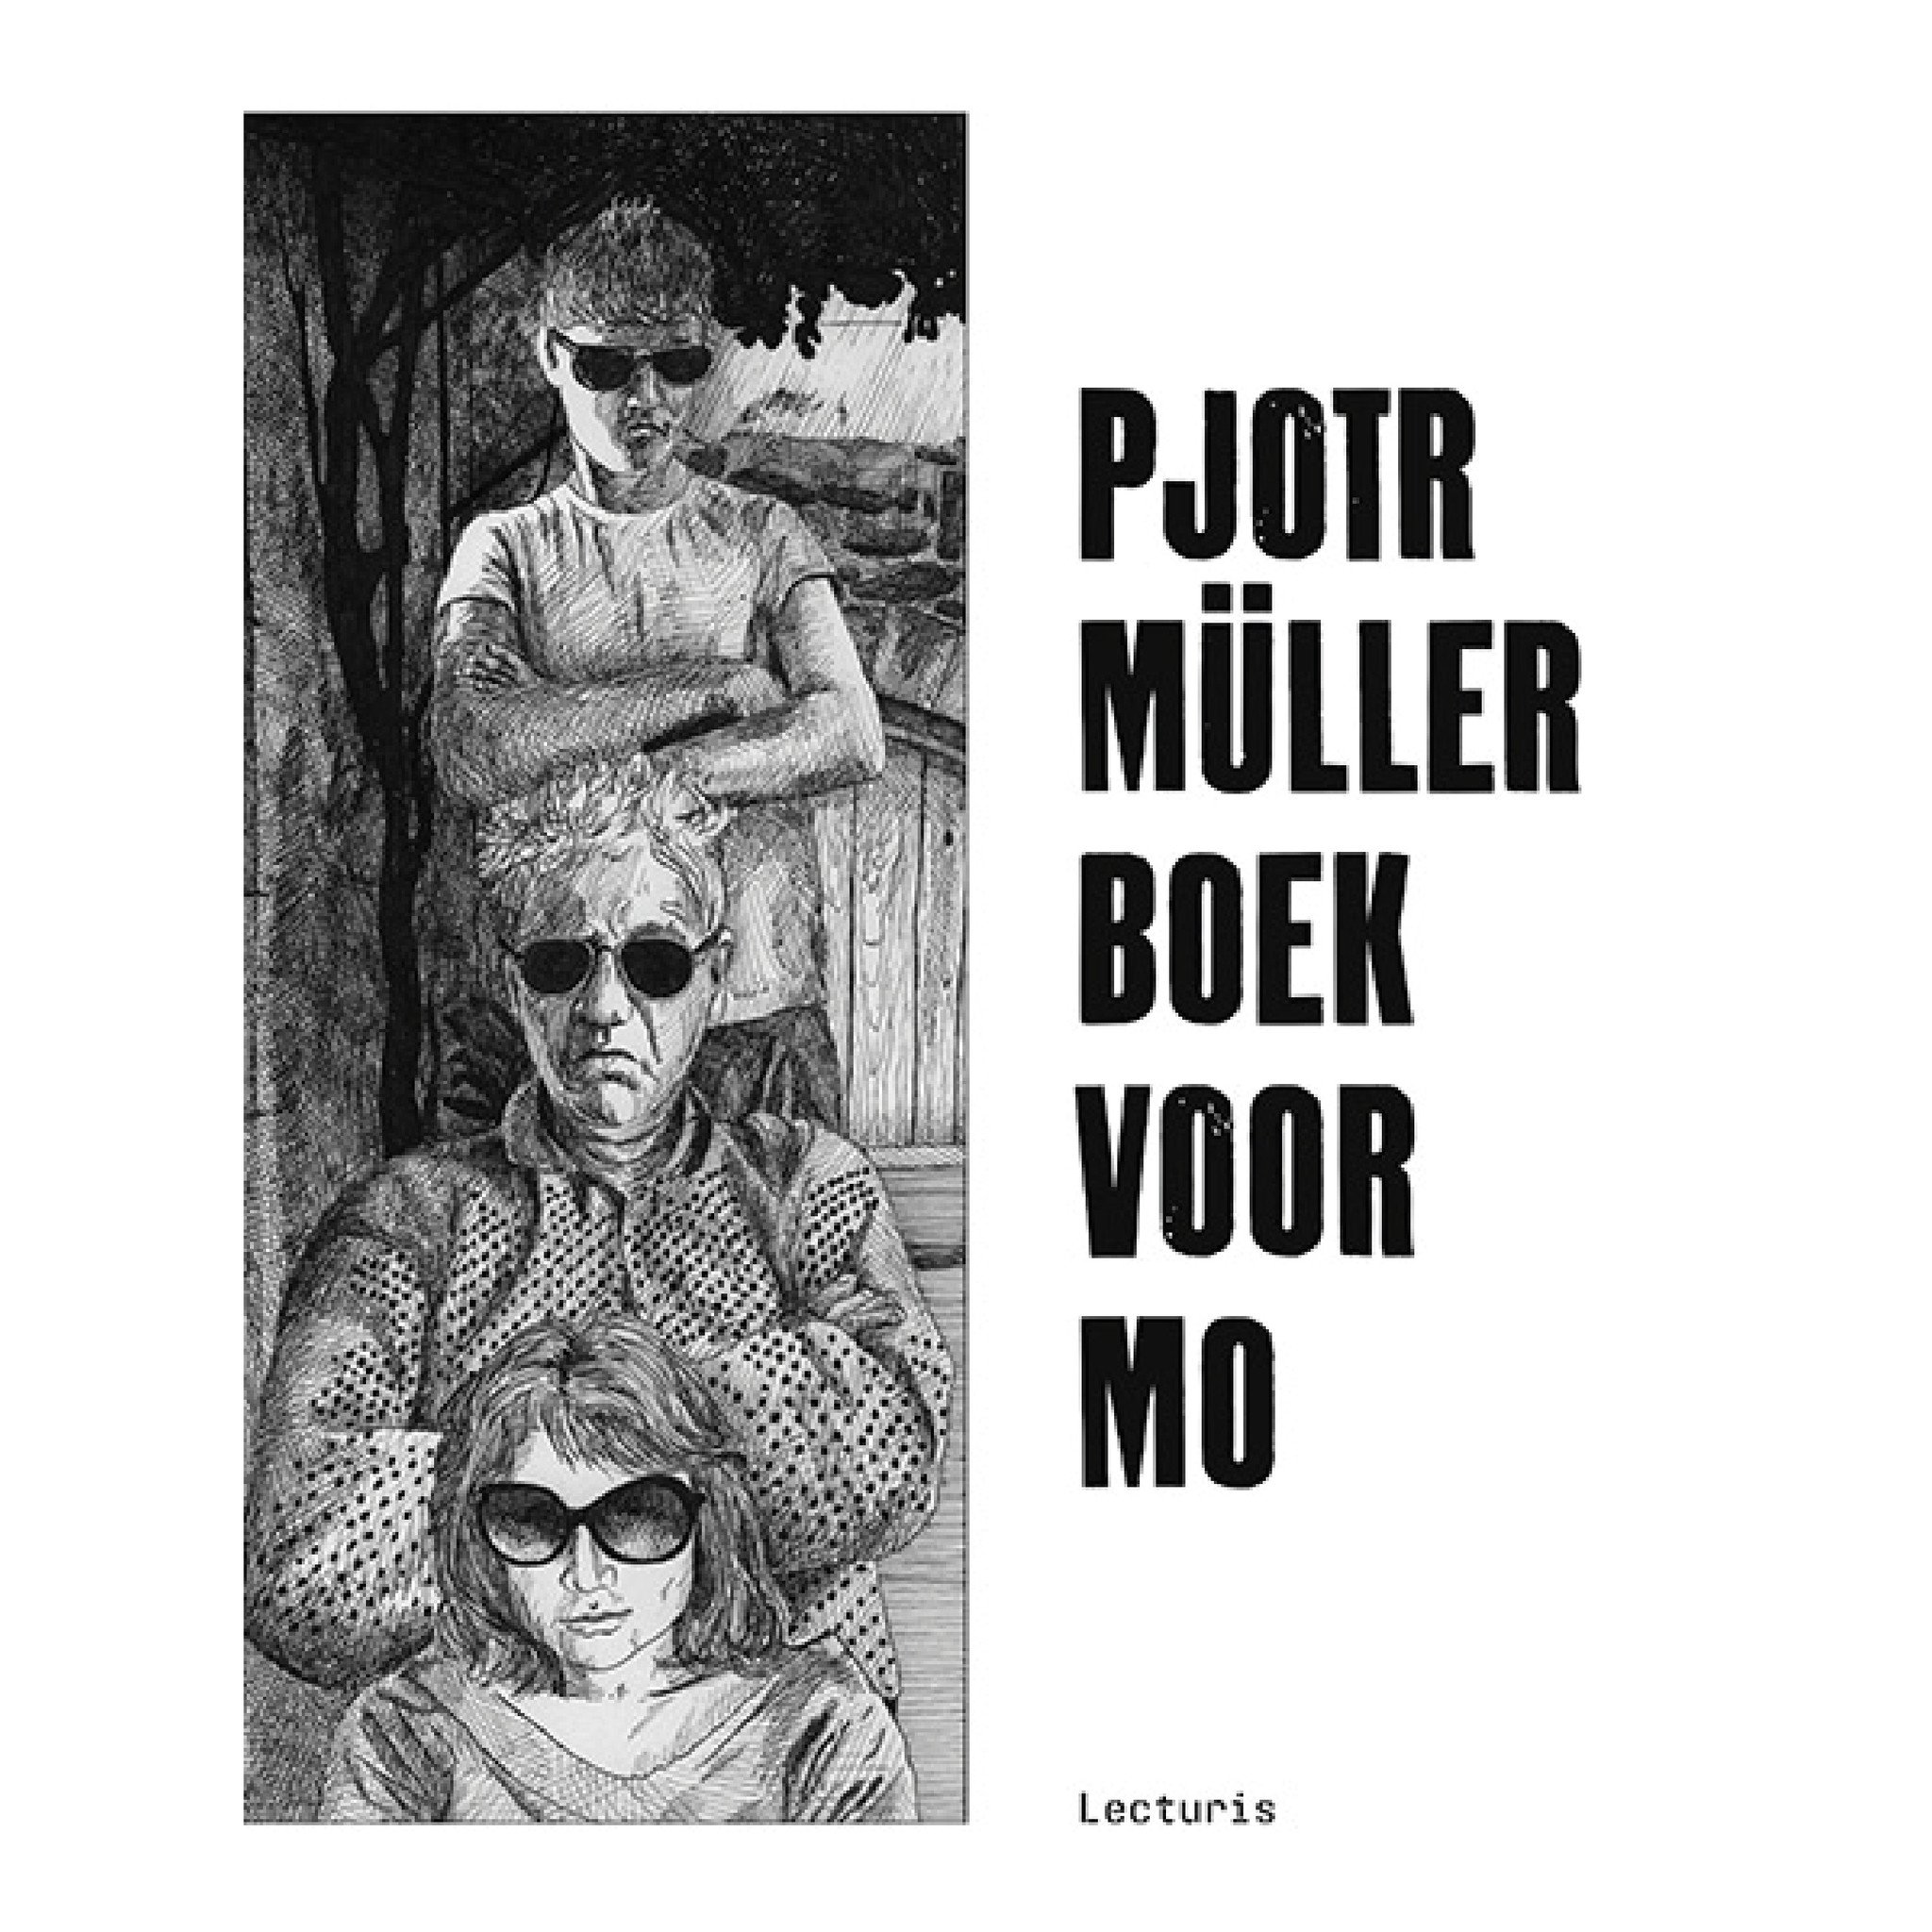 Pjotr Müller Boek voor Mo (NL)